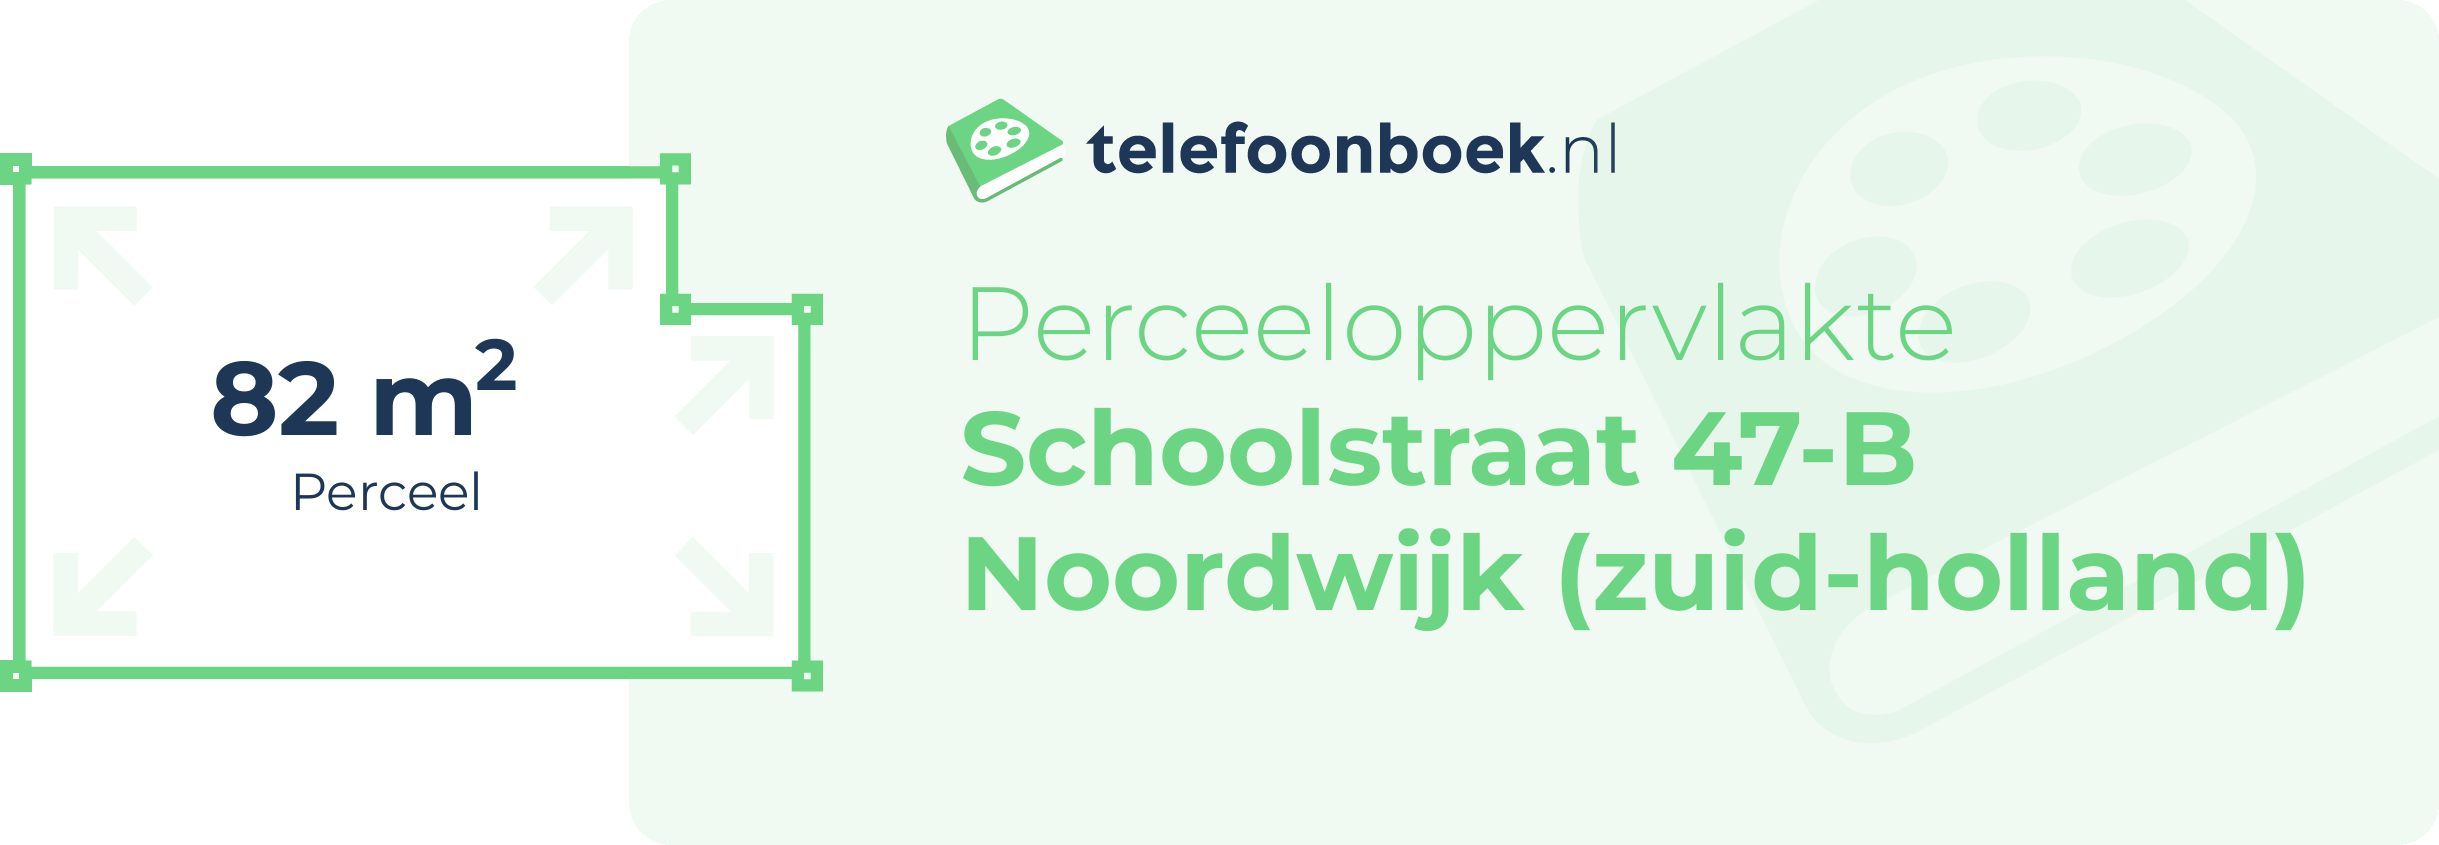 Perceeloppervlakte Schoolstraat 47-B Noordwijk (Zuid-Holland)